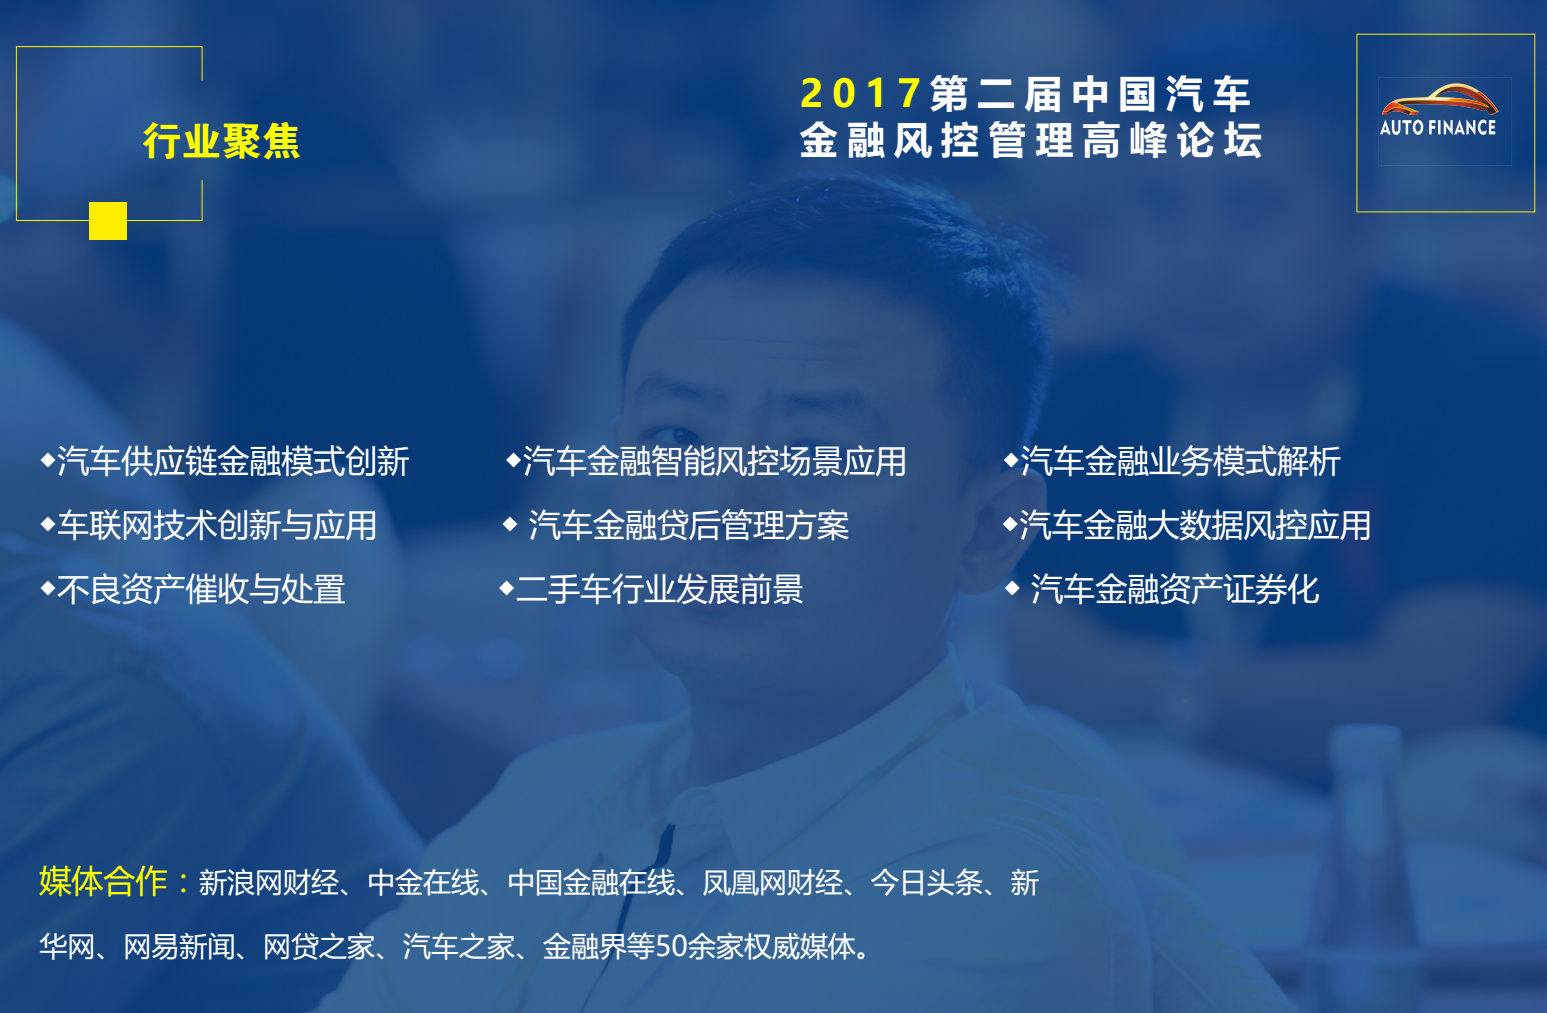 第二届中国汽车金融风控管理高峰论坛